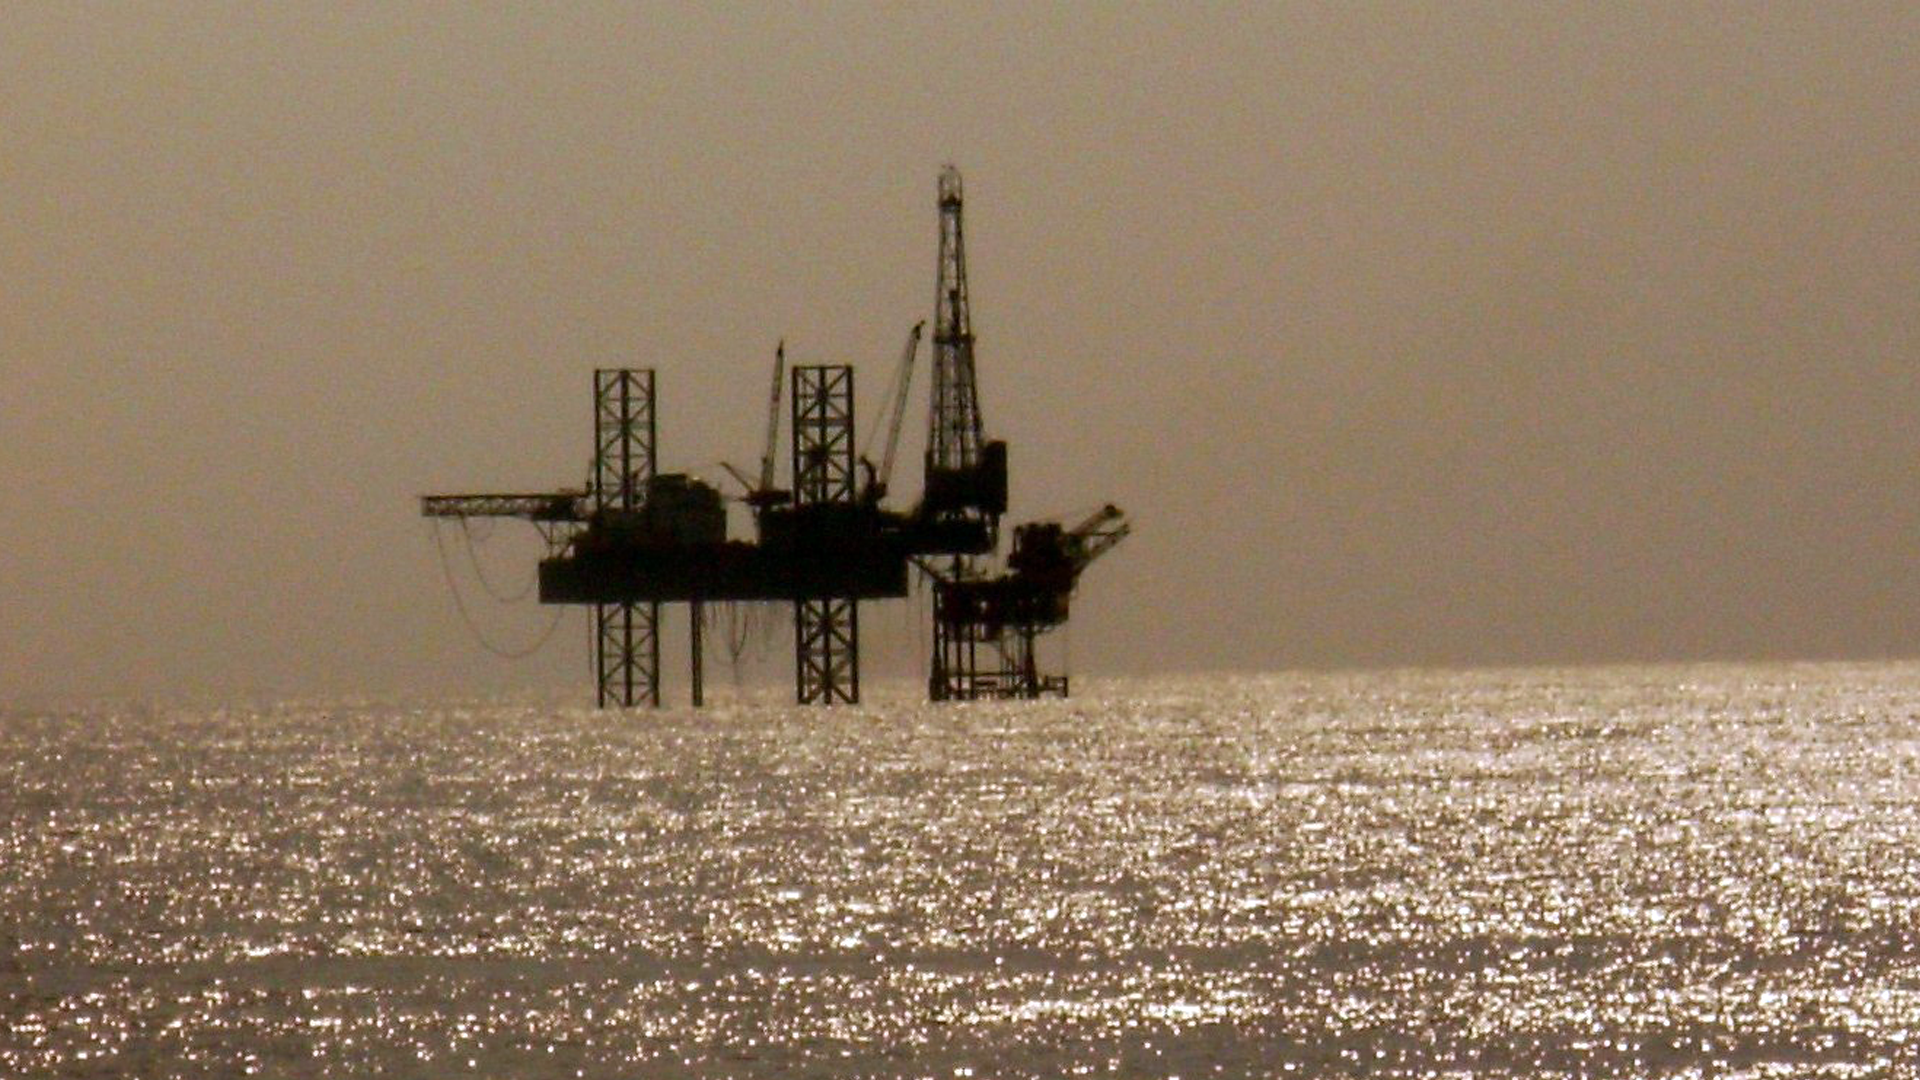 भारत को अपने oil reserves को ले के एक बड़ी जीत मिल सकती है। पर कैसे? Crude Oil Discovery in Andman & Nicobar Island